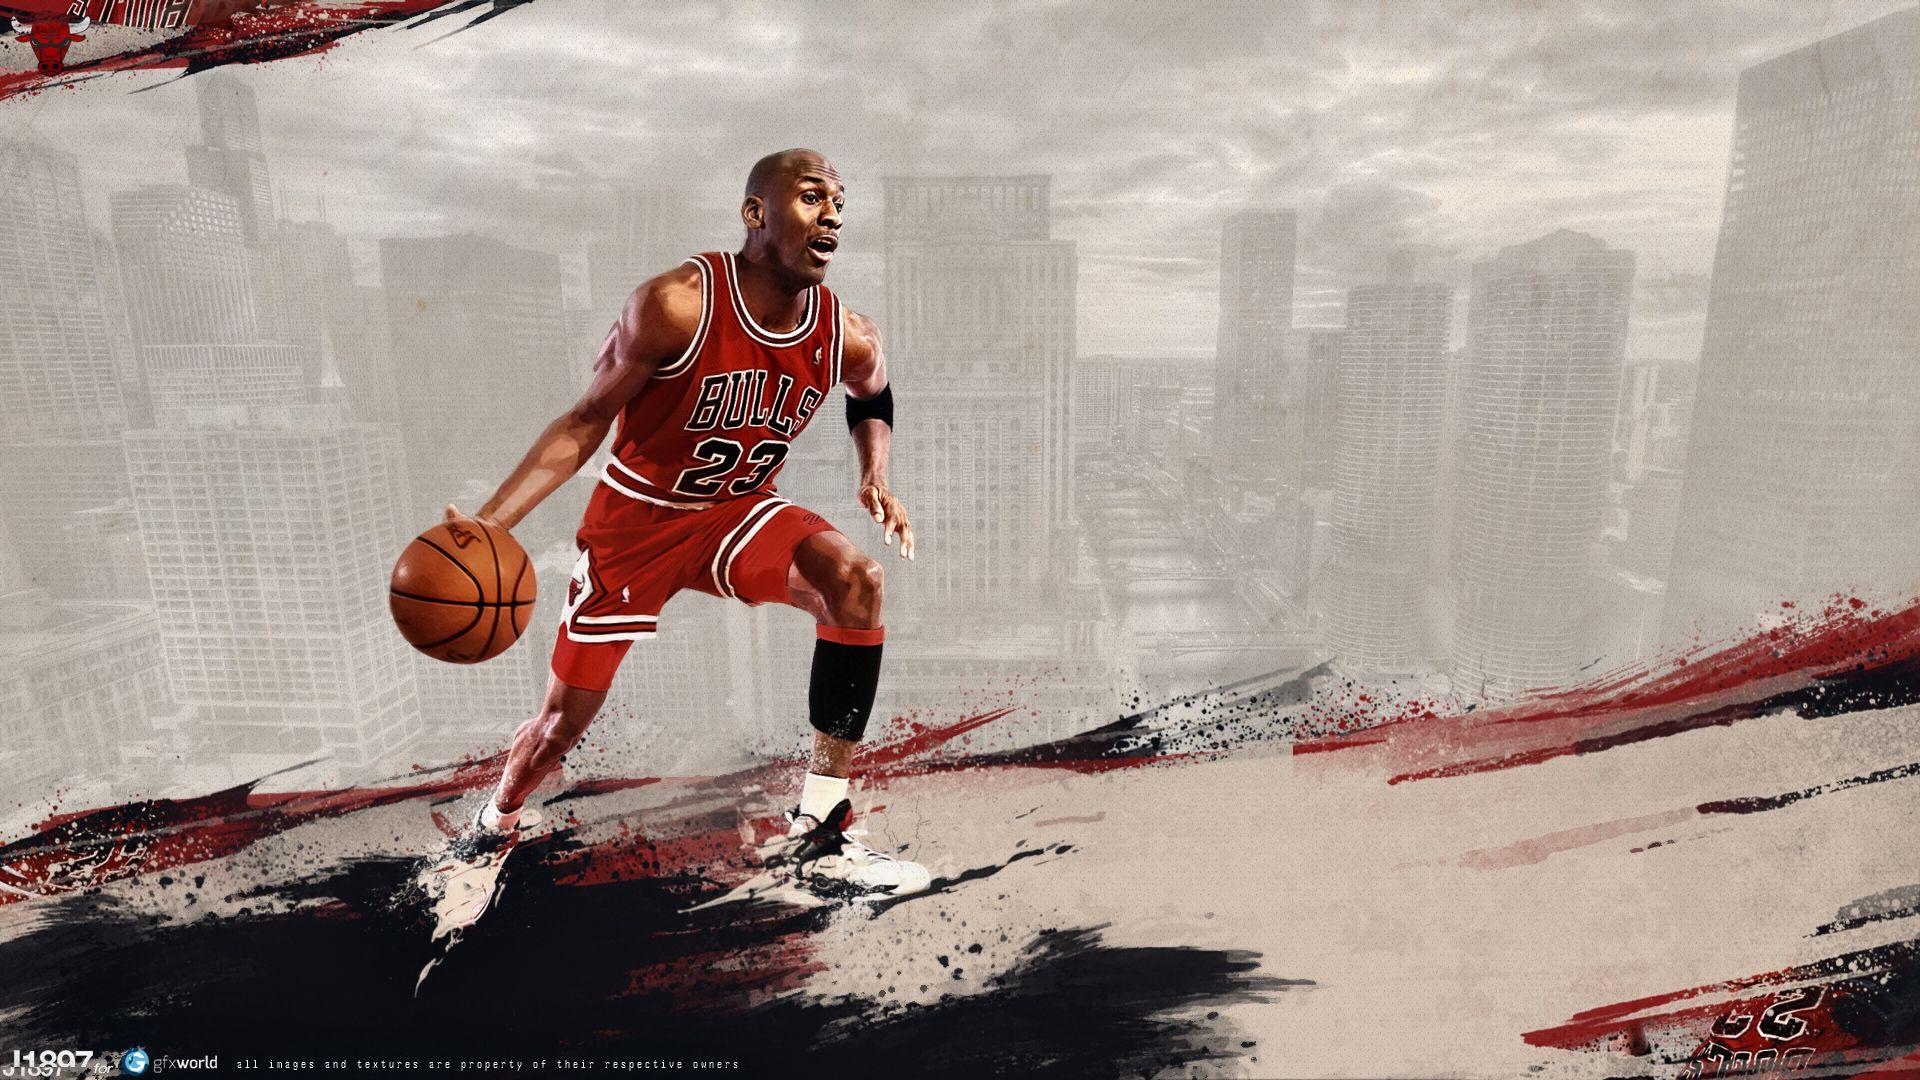 100+] Jordan Basketball Wallpapers